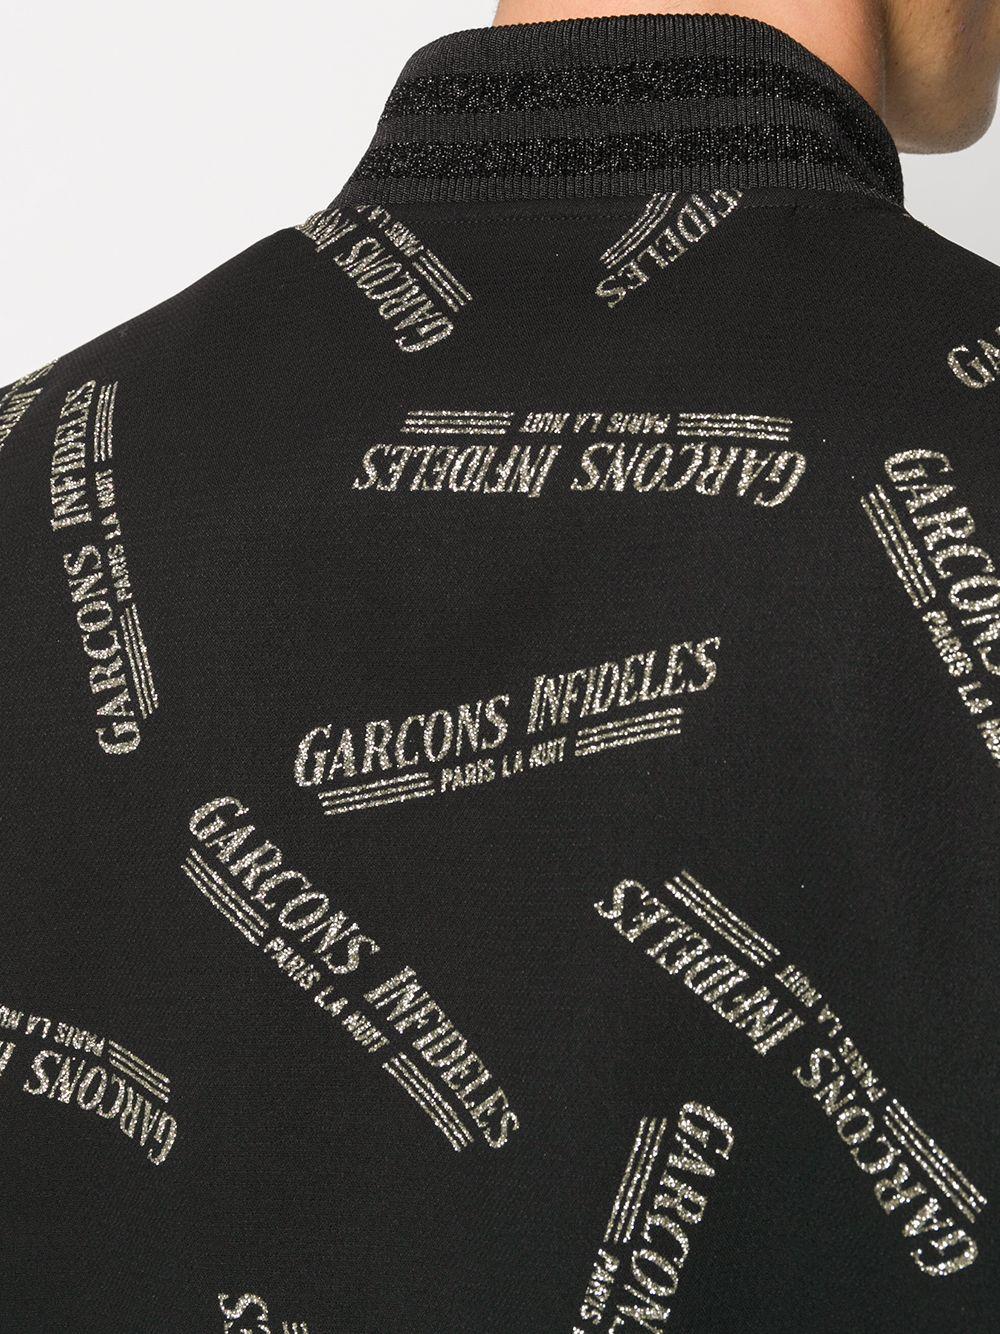 Garçons Infideles Logo Print Bomber Jacket in Black for Men | Lyst